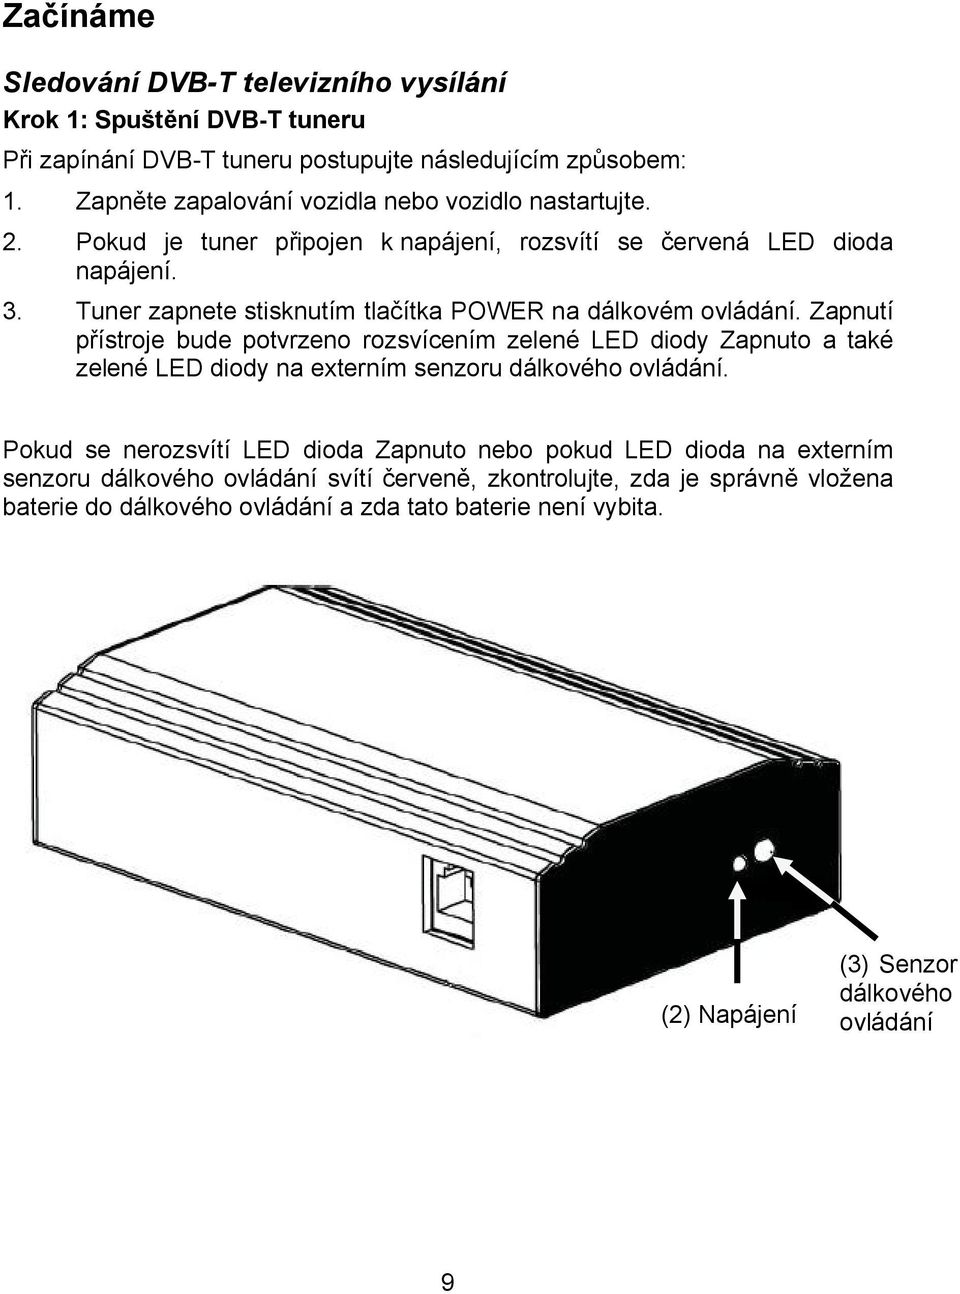 Zapnutí přístroje bude potvrzeno rozsvícením zelené LED diody Zapnuto a také zelené LED diody na externím senzoru dálkového ovládání.